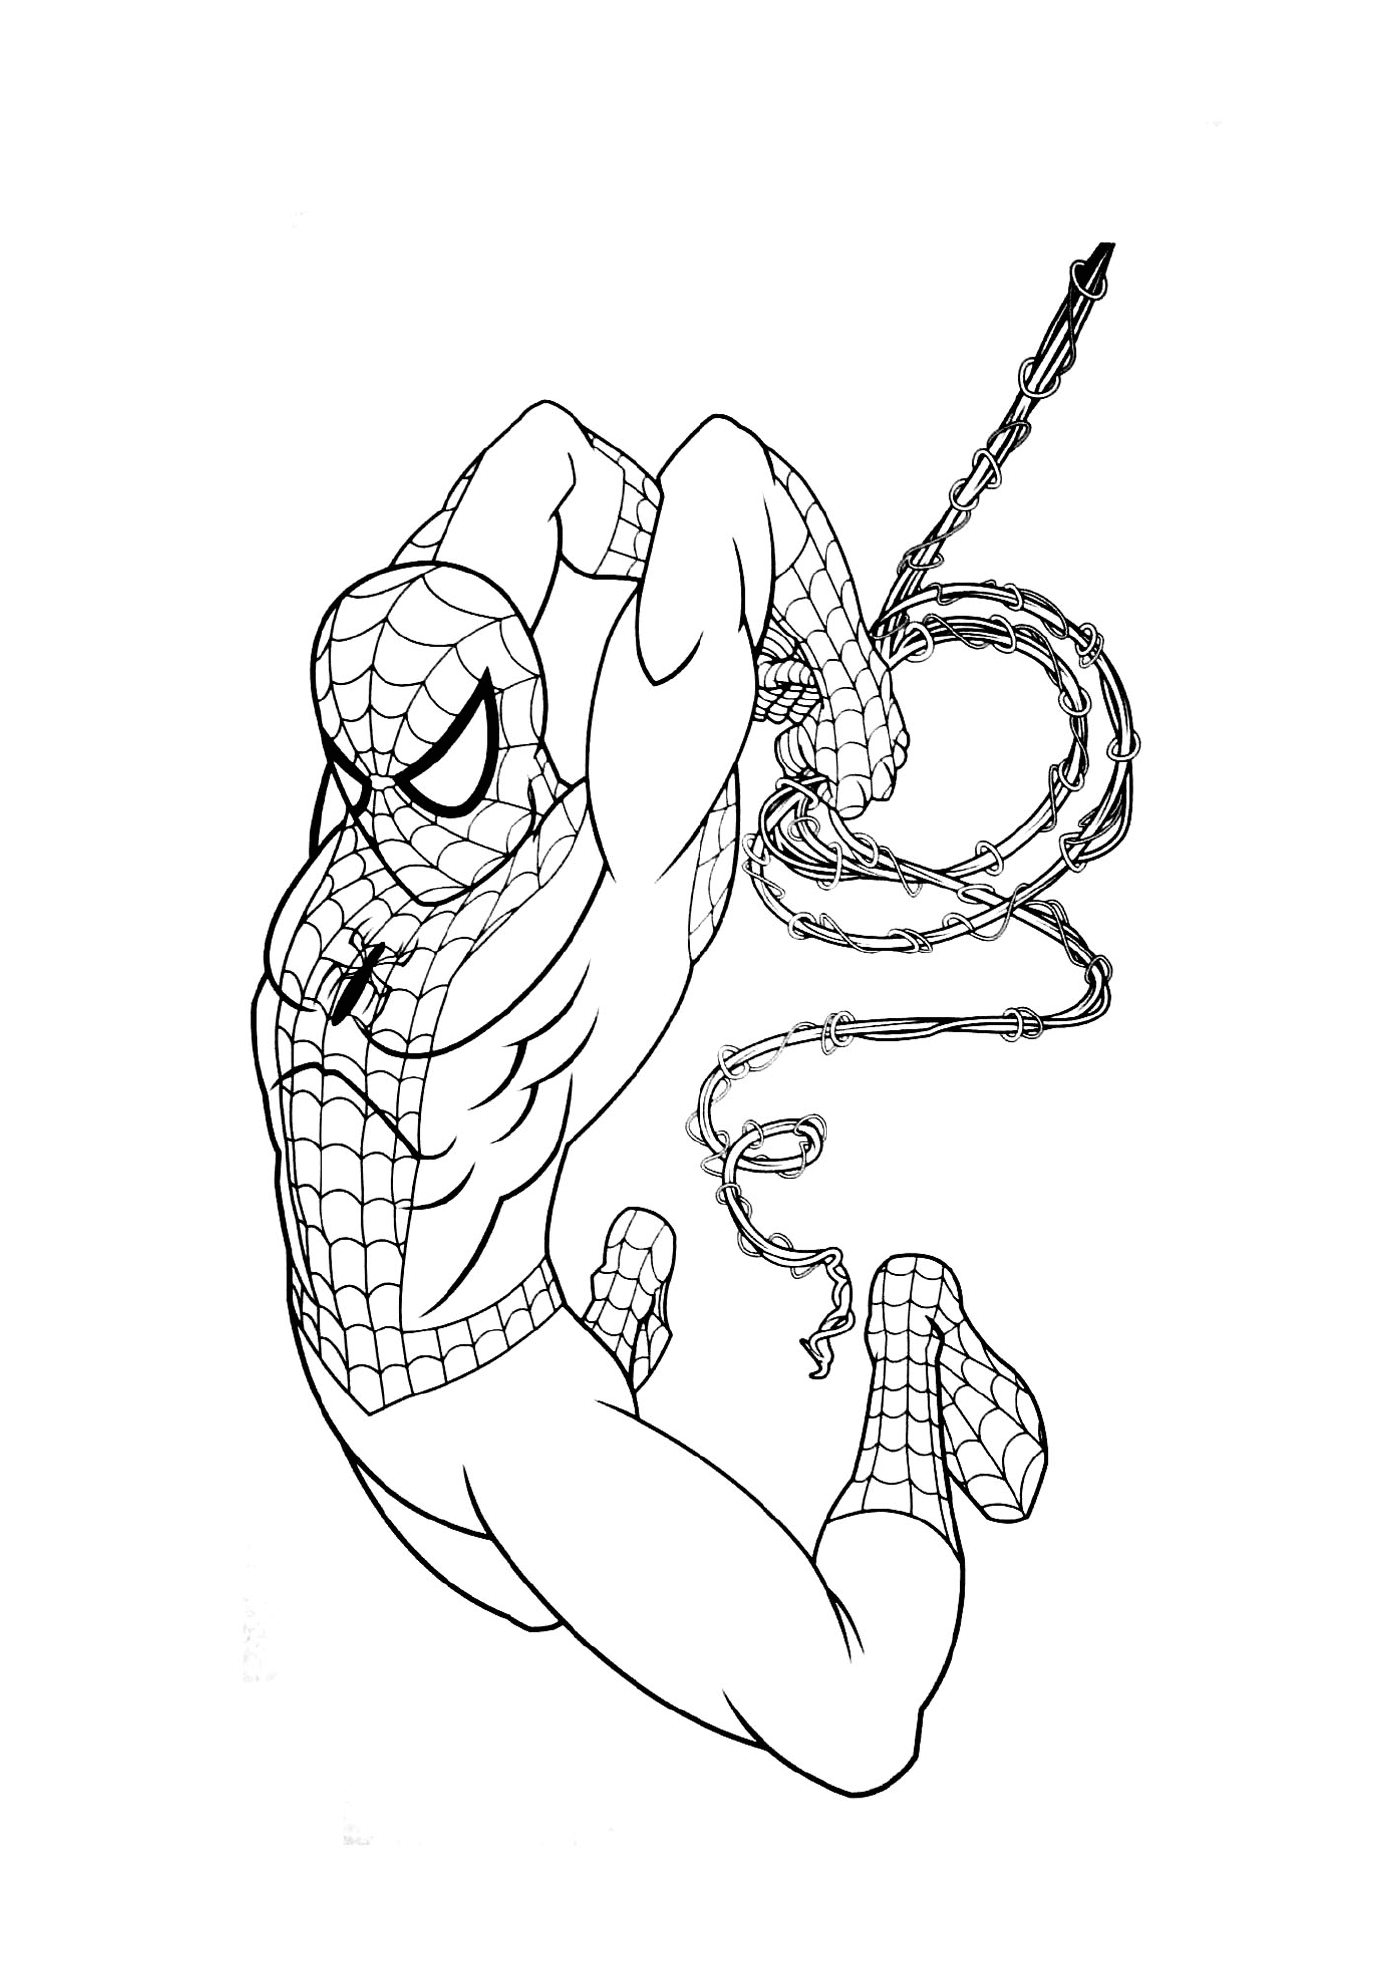  Superhero boy in Spider-Man costume 